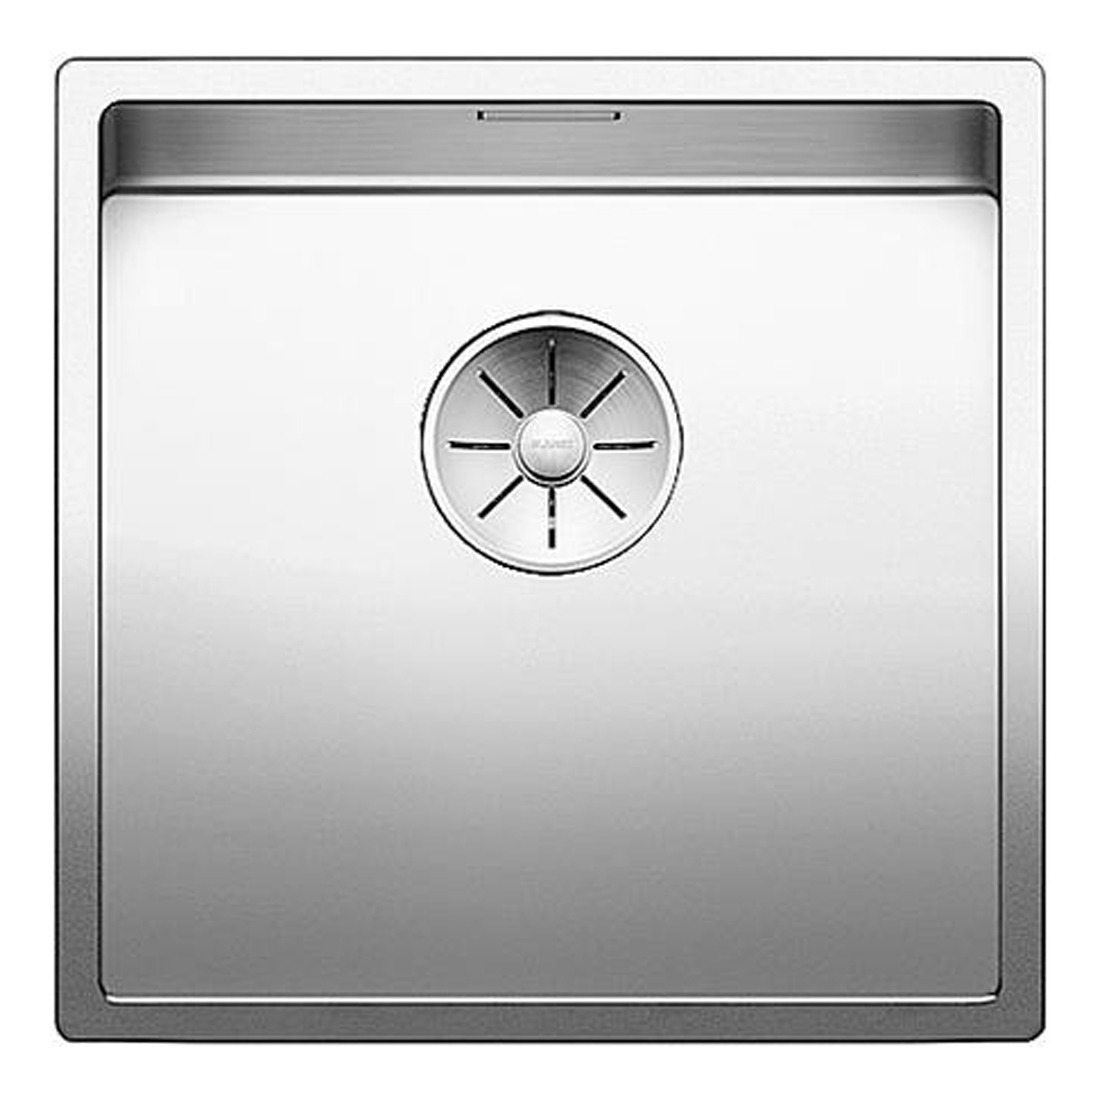 Кухонная мойка Blanco Claron 400-U зеркальная полировка кухонная мойка blanco axis iii 6s if правая зеркальная полировка